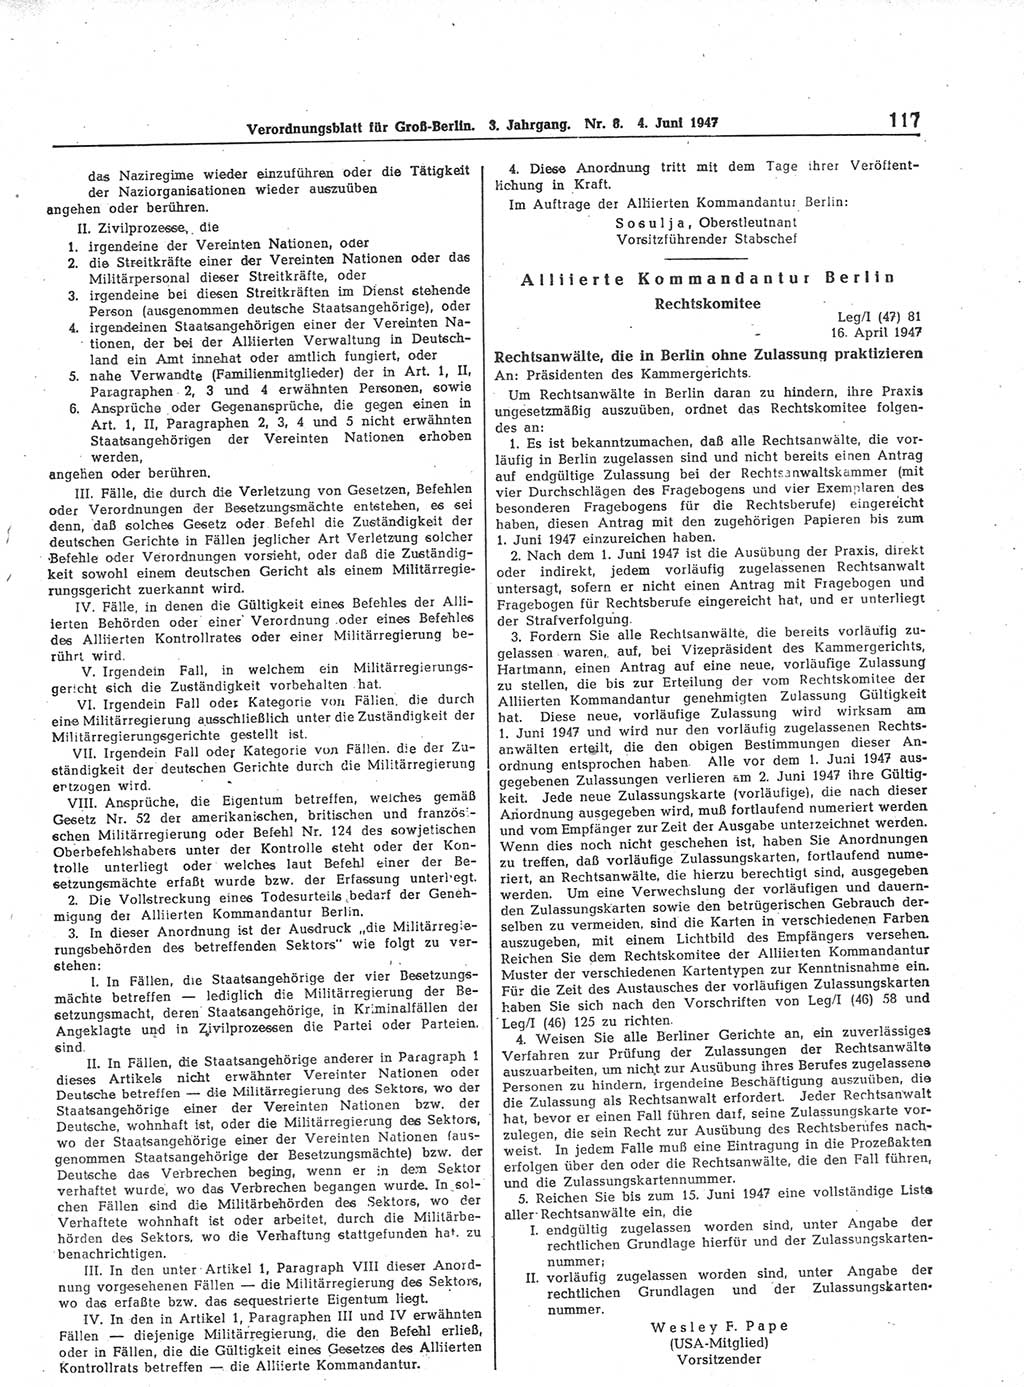 Verordnungsblatt (VOBl.) für Groß-Berlin 1947, Seite 117 (VOBl. Bln. 1947, S. 117)